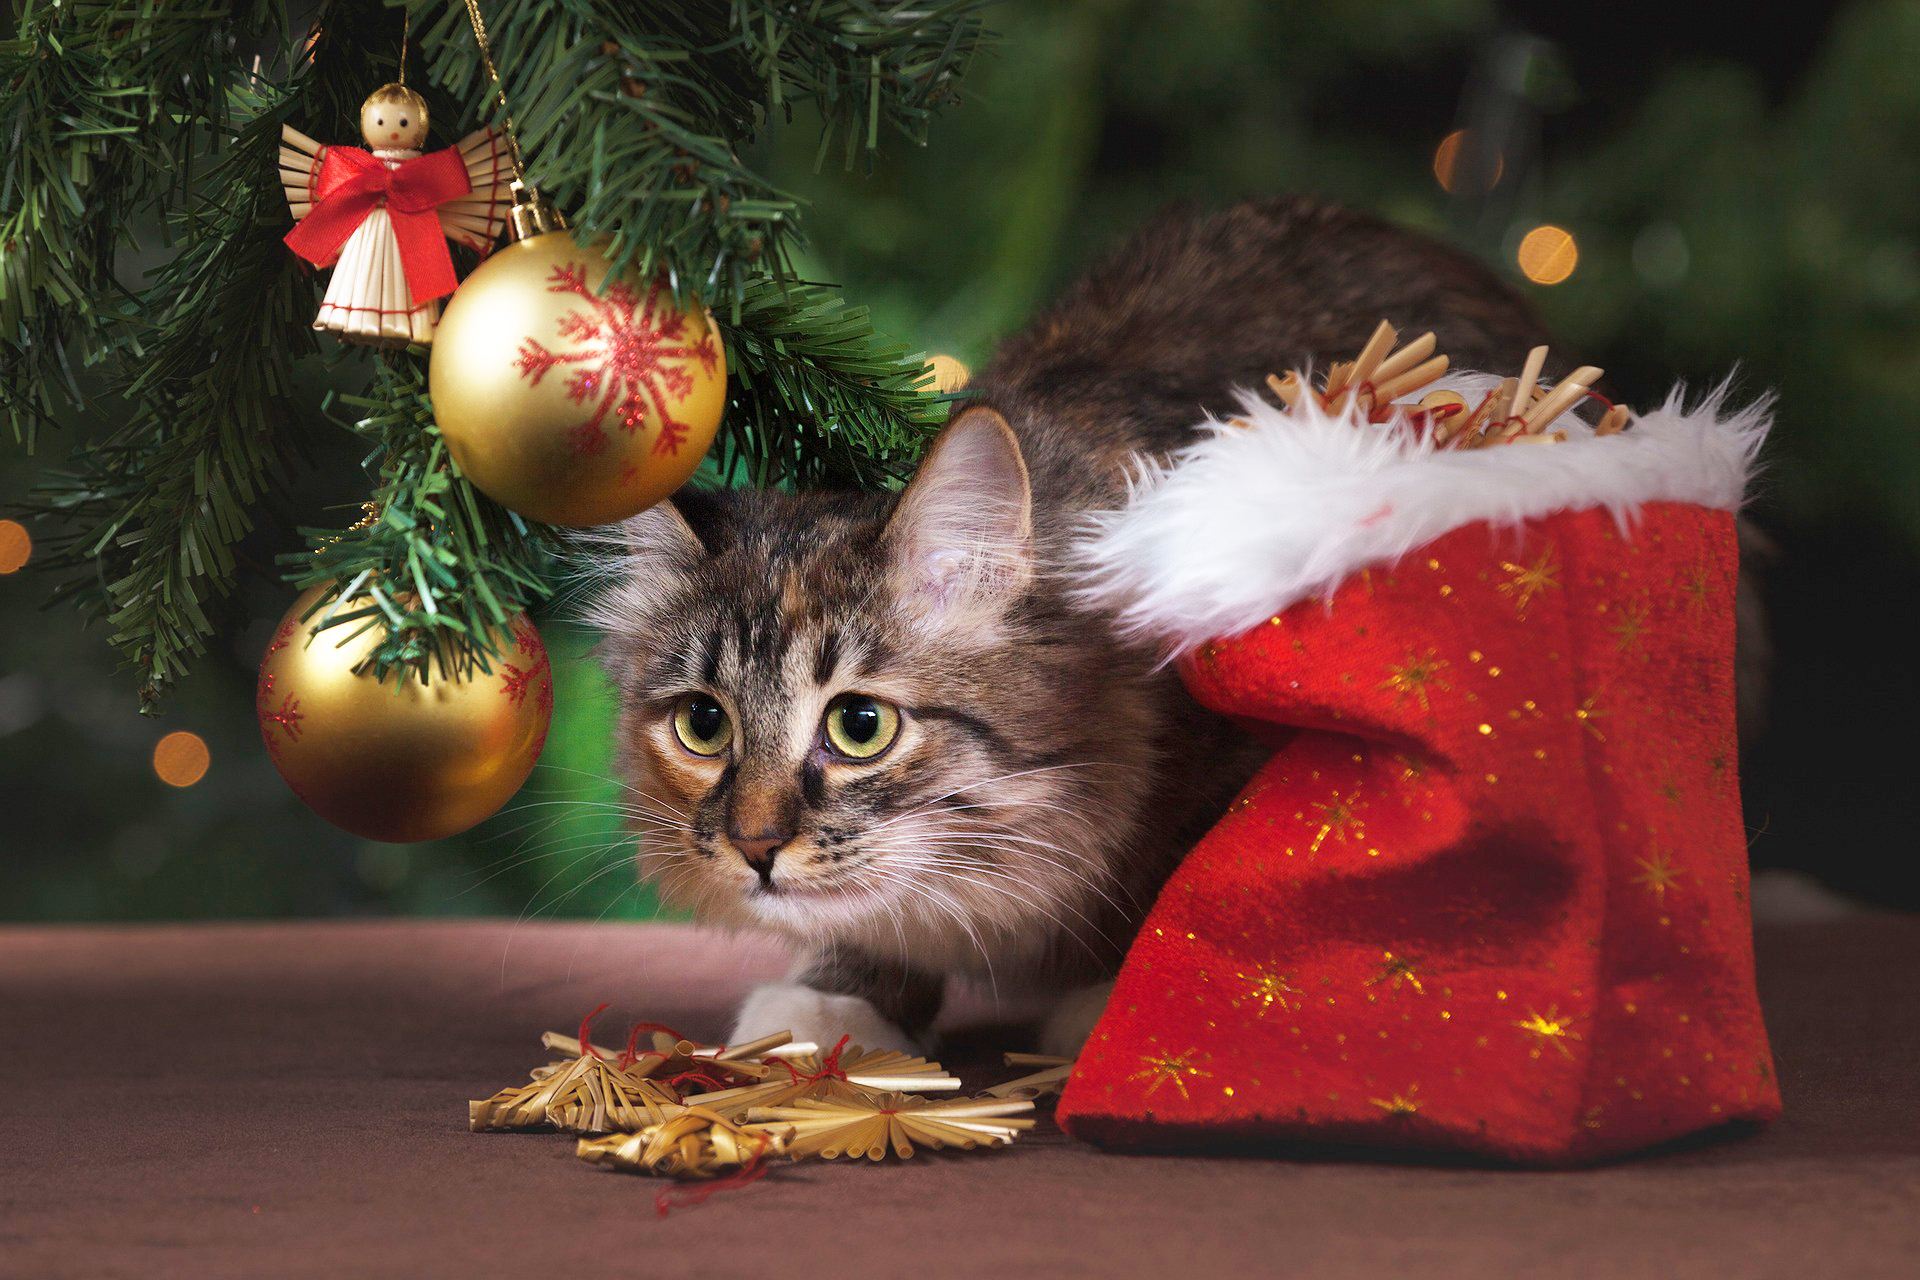 Katze und Weihnachtsbaum - ist ein Weihnachtsbaum katzensicher?